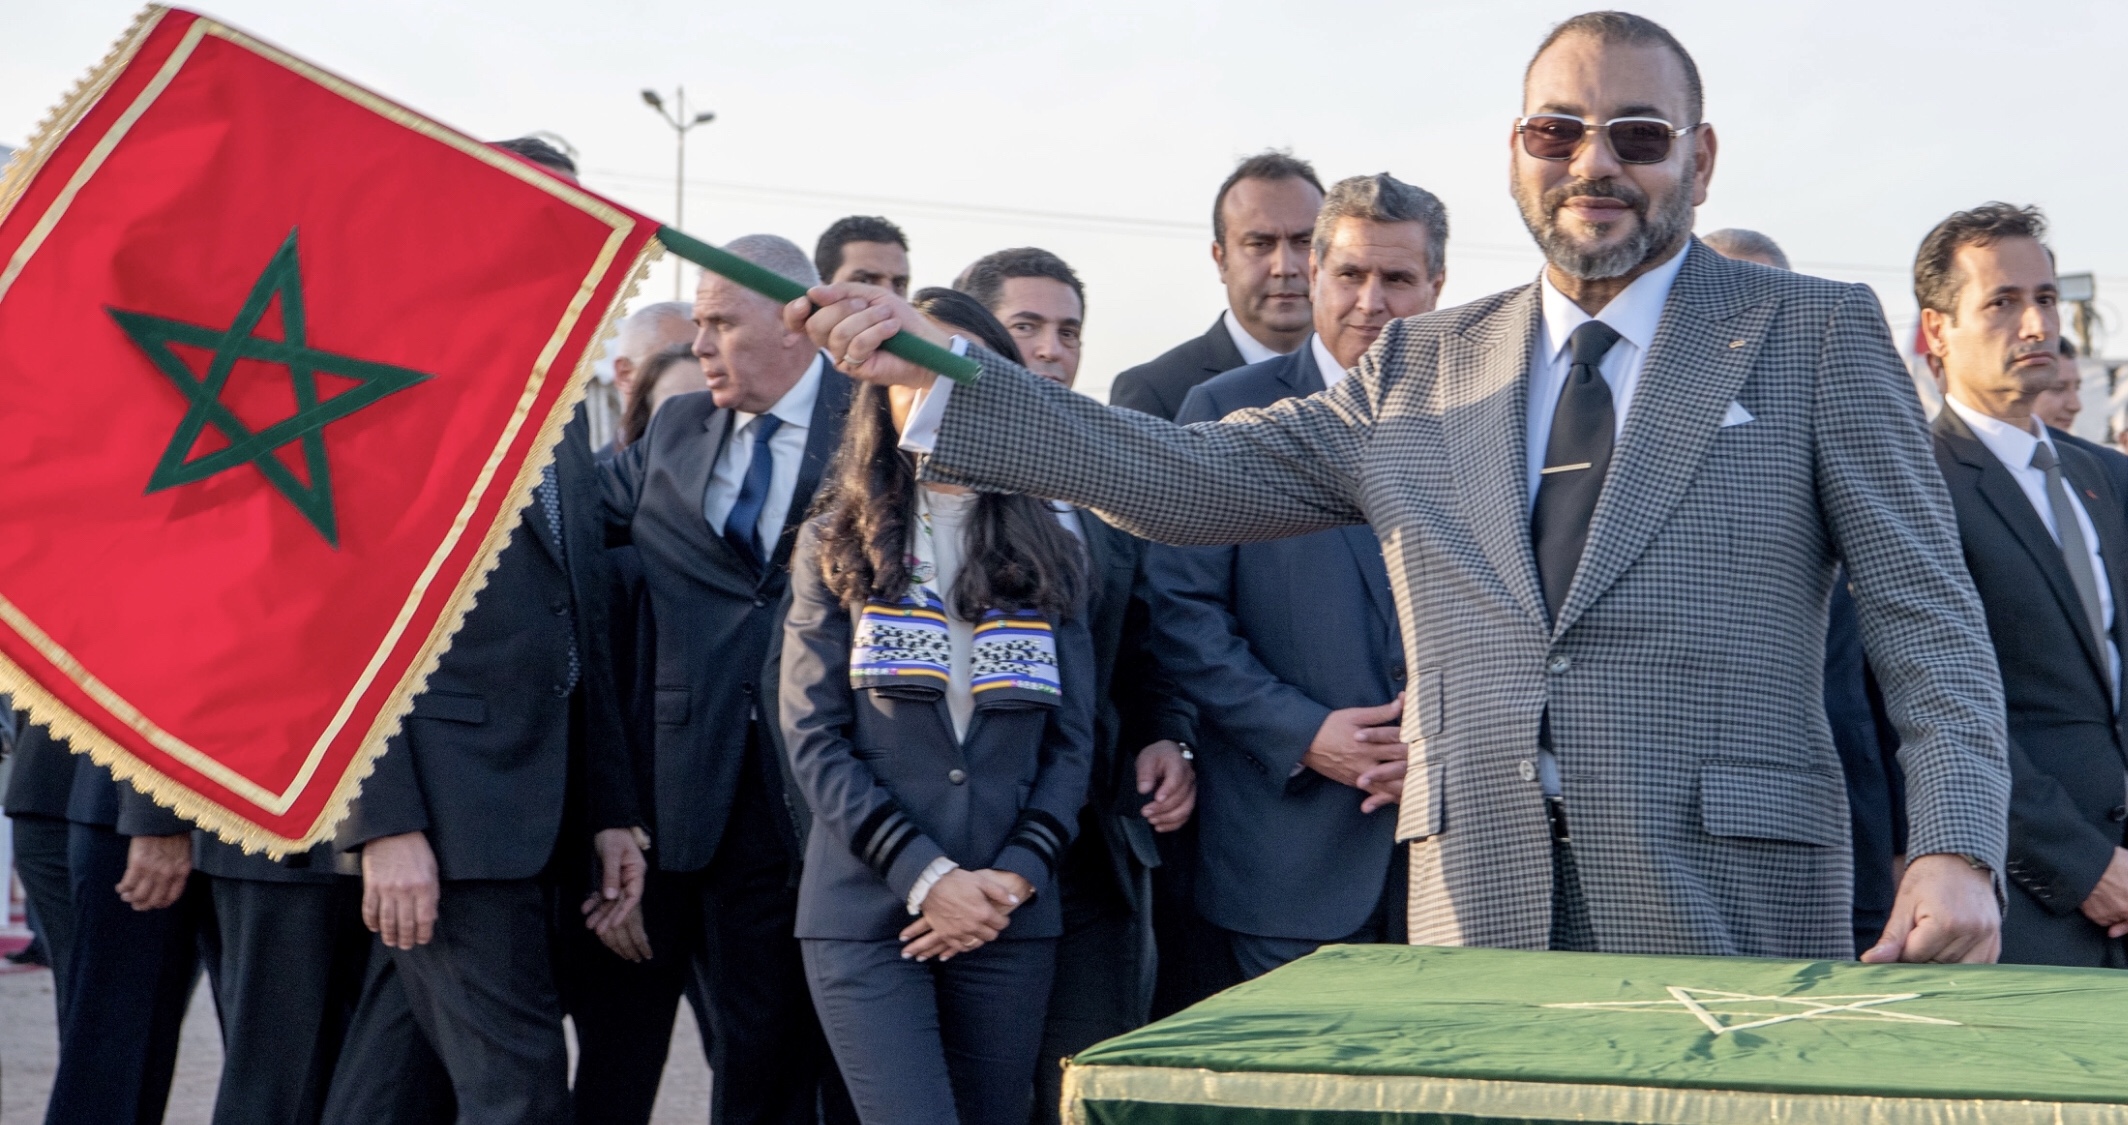 بقيادة الملك محمد السادس المغرب يشهد دينامية اقتصادية قوية